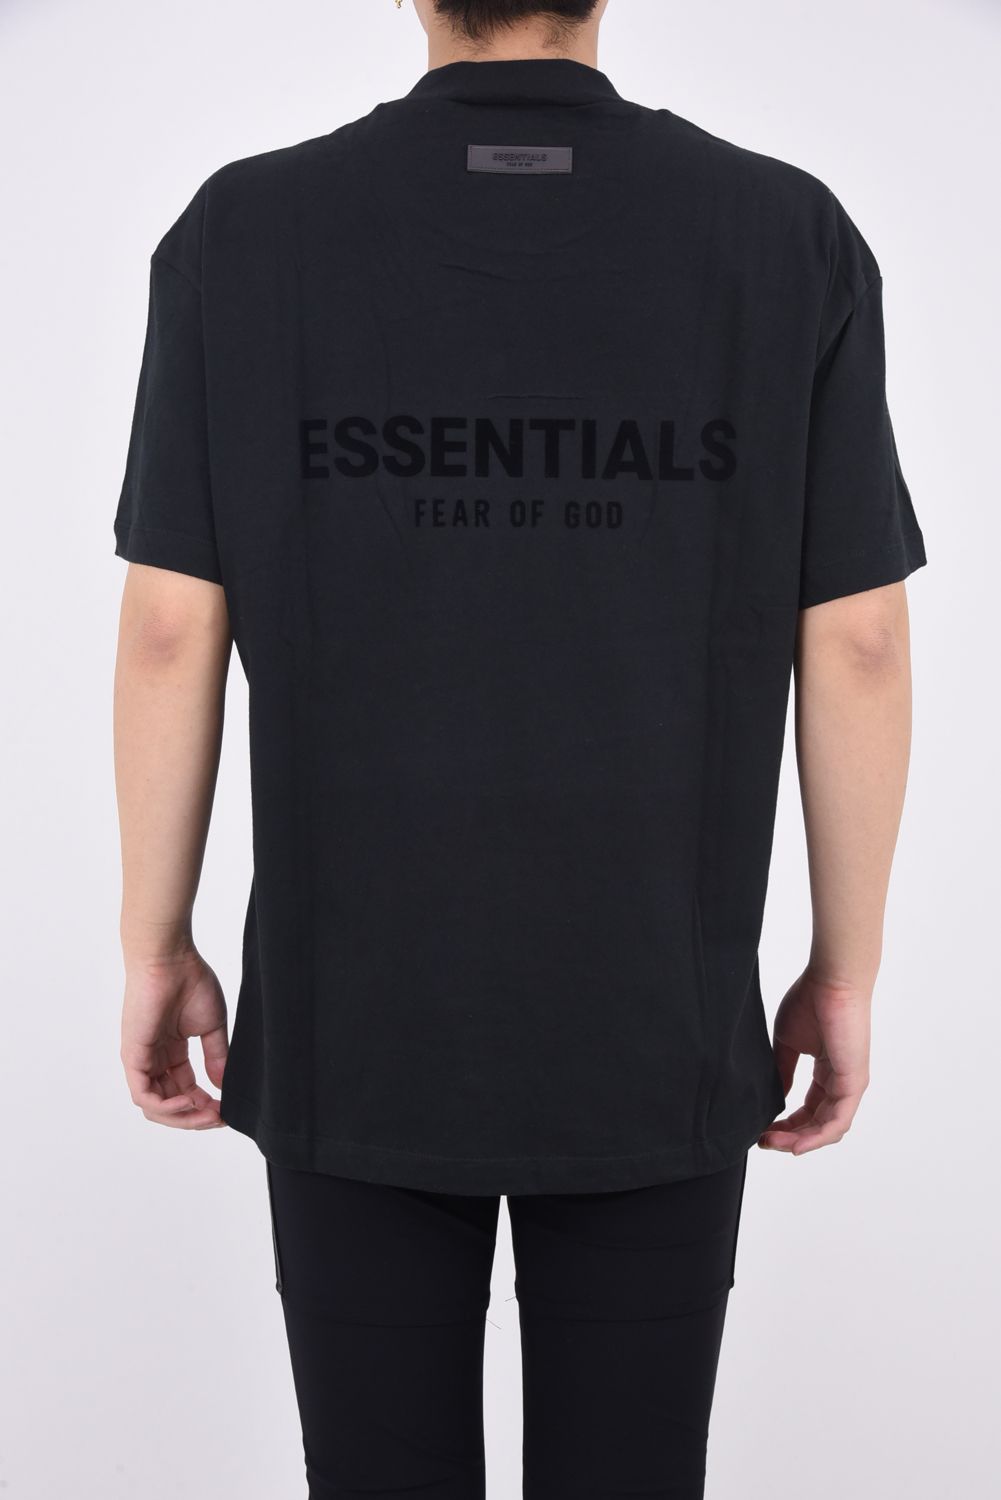 新品 FOG ESSENTIALS エッセンシャルズ ロゴ Tシャツ S